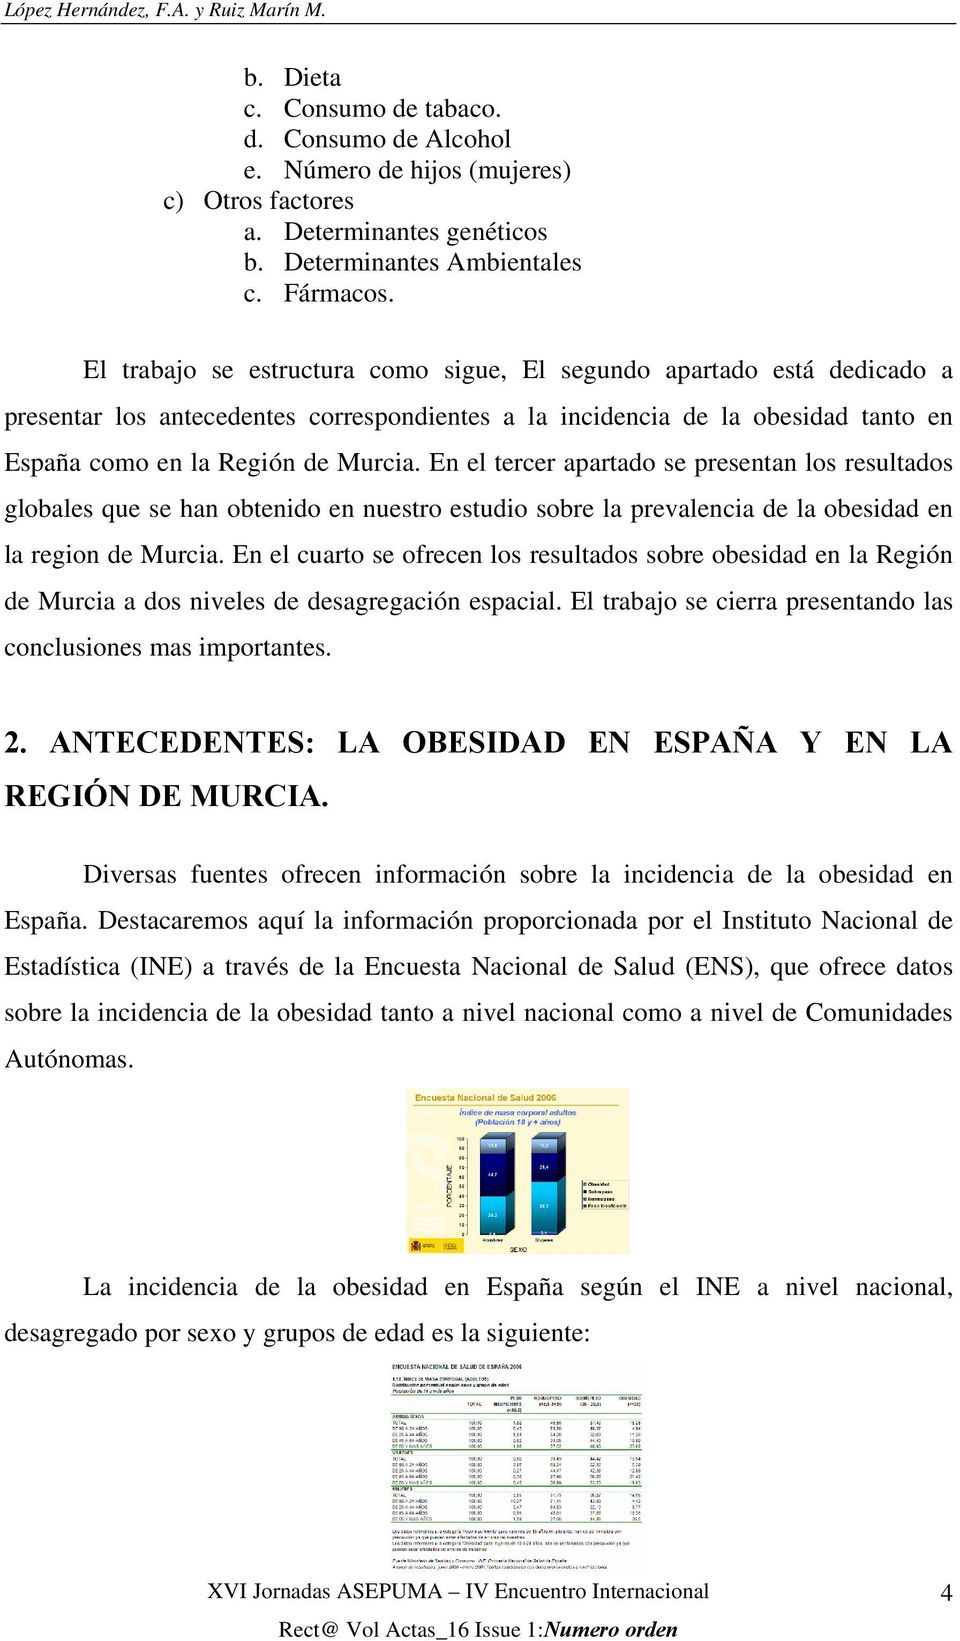 El trabajo se estructura como sigue, El segundo apartado está dedicado a presentar los antecedentes correspondientes a la incidencia de la obesidad tanto en España como en la Región de Murcia.